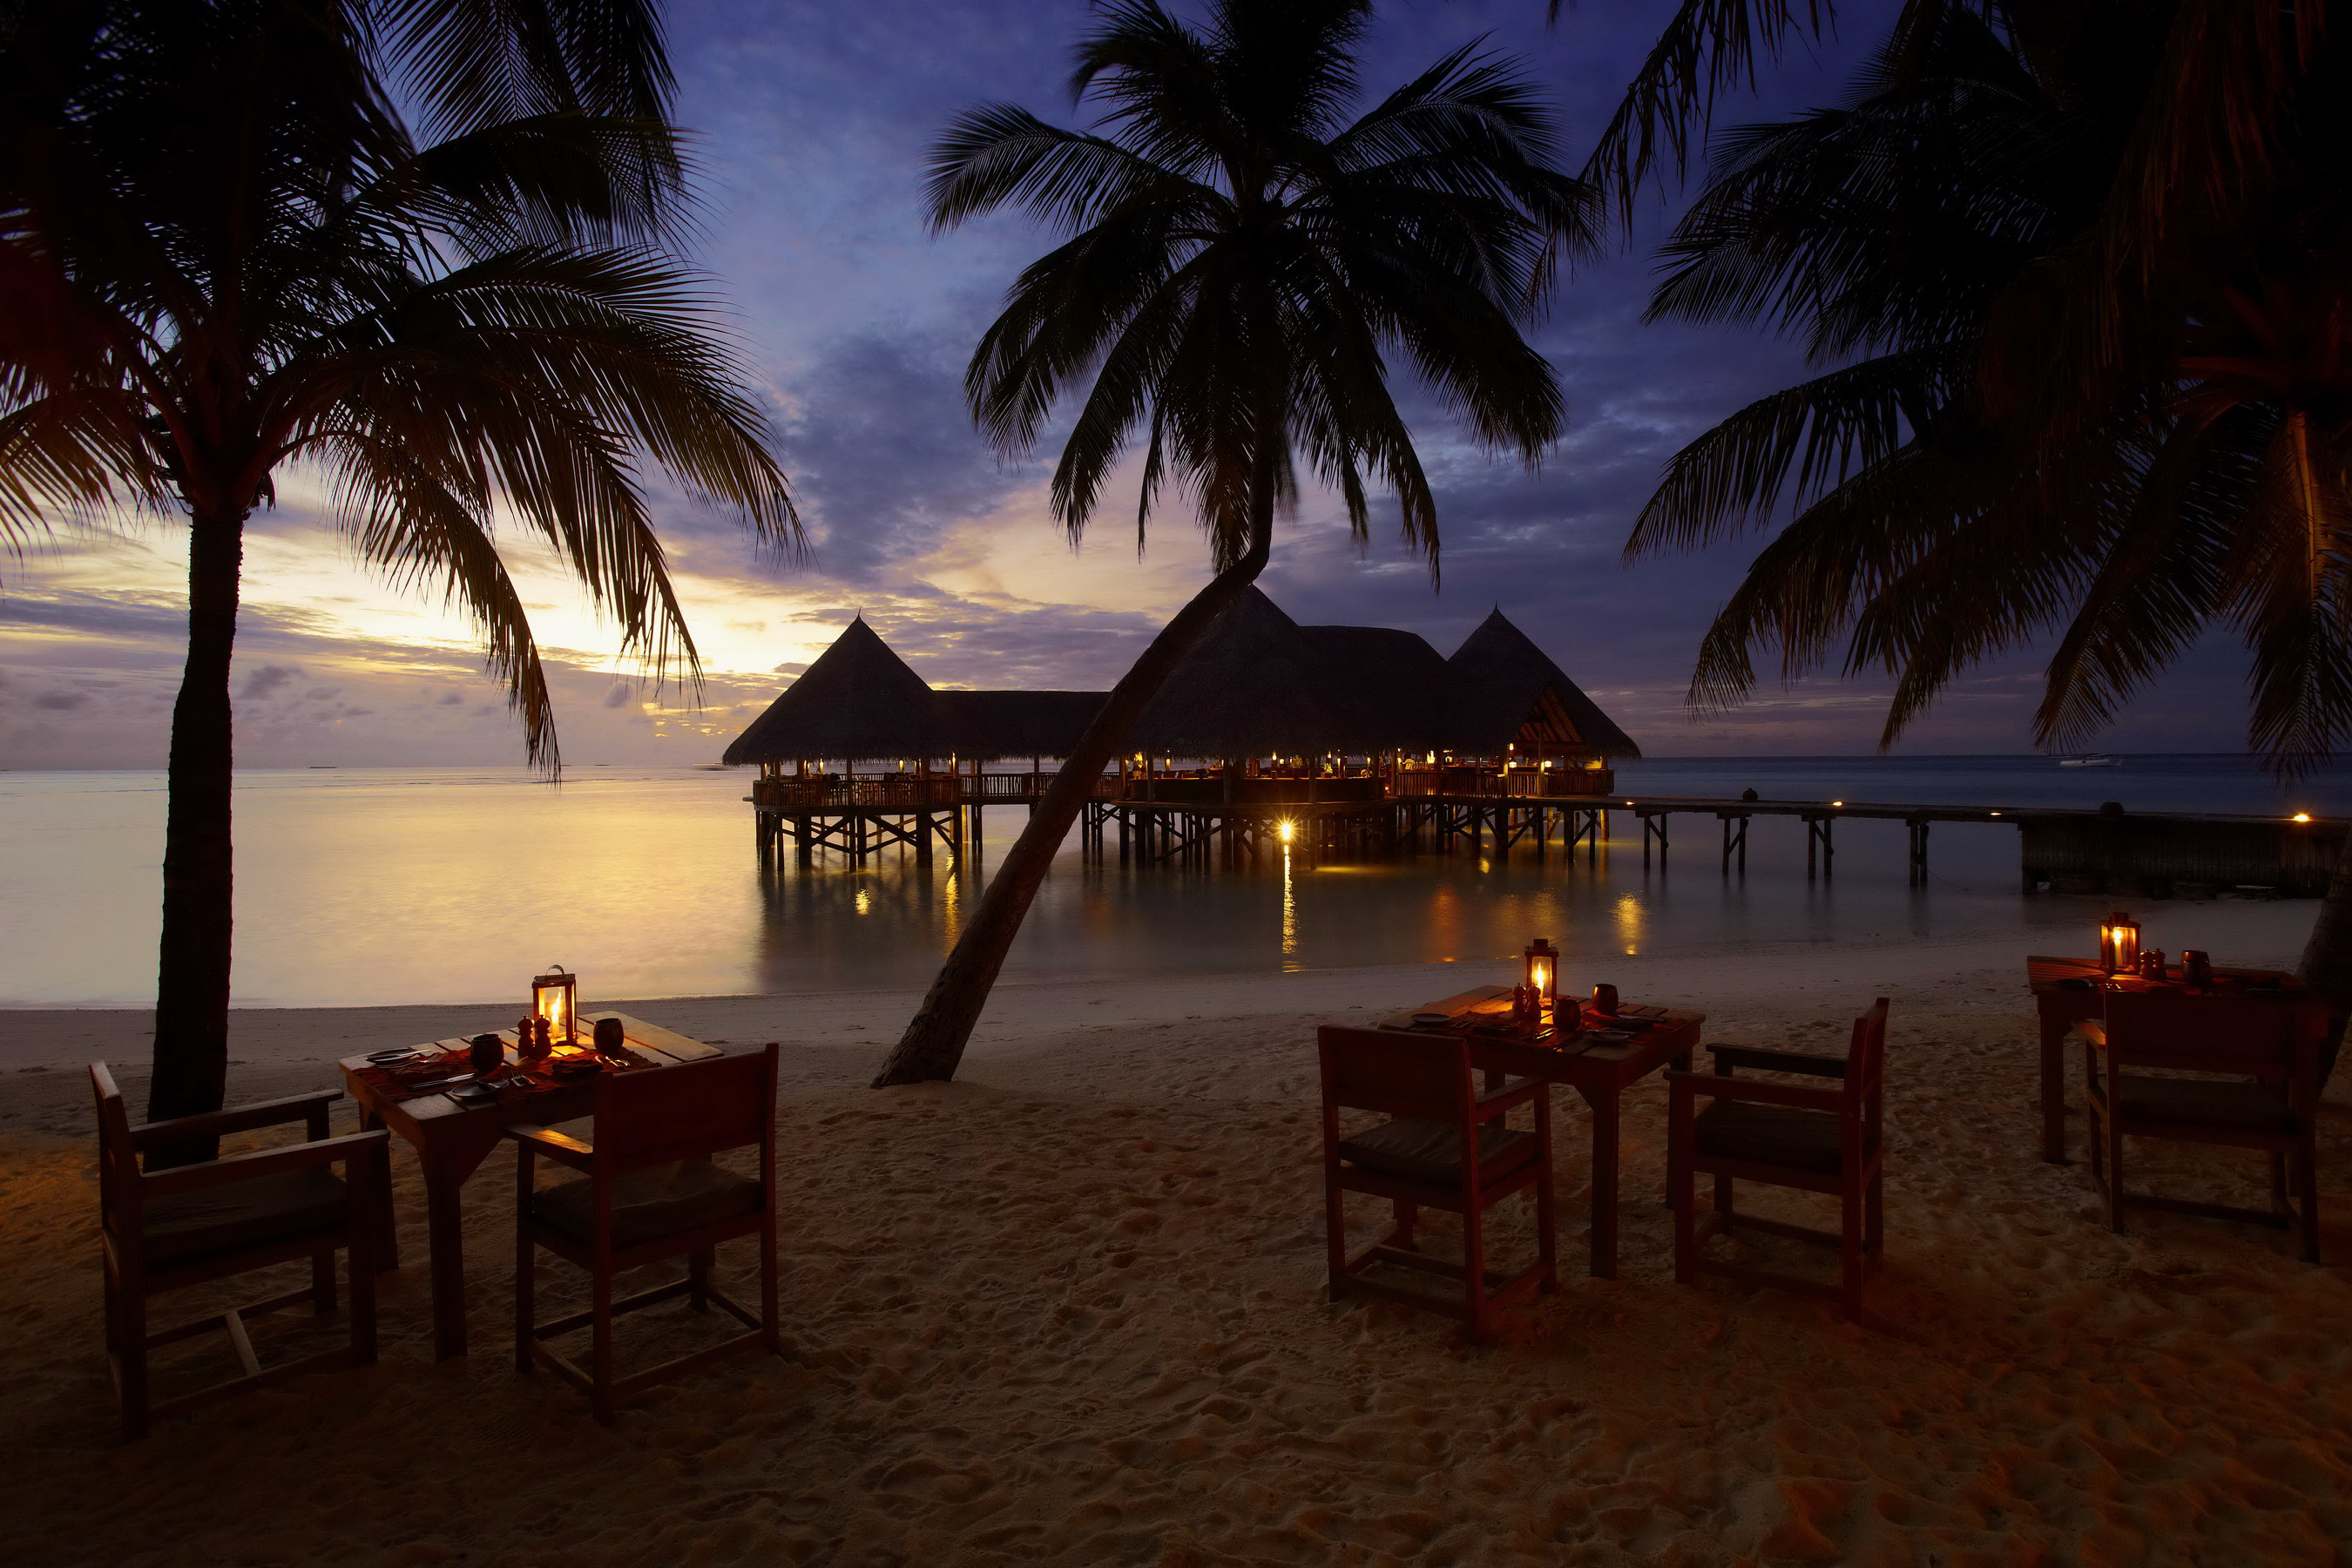 841123 descargar imagen bungalow, fotografía, día festivo, playa, silla, tardecita, horizonte, maldivas, palmera, mesa: fondos de pantalla y protectores de pantalla gratis